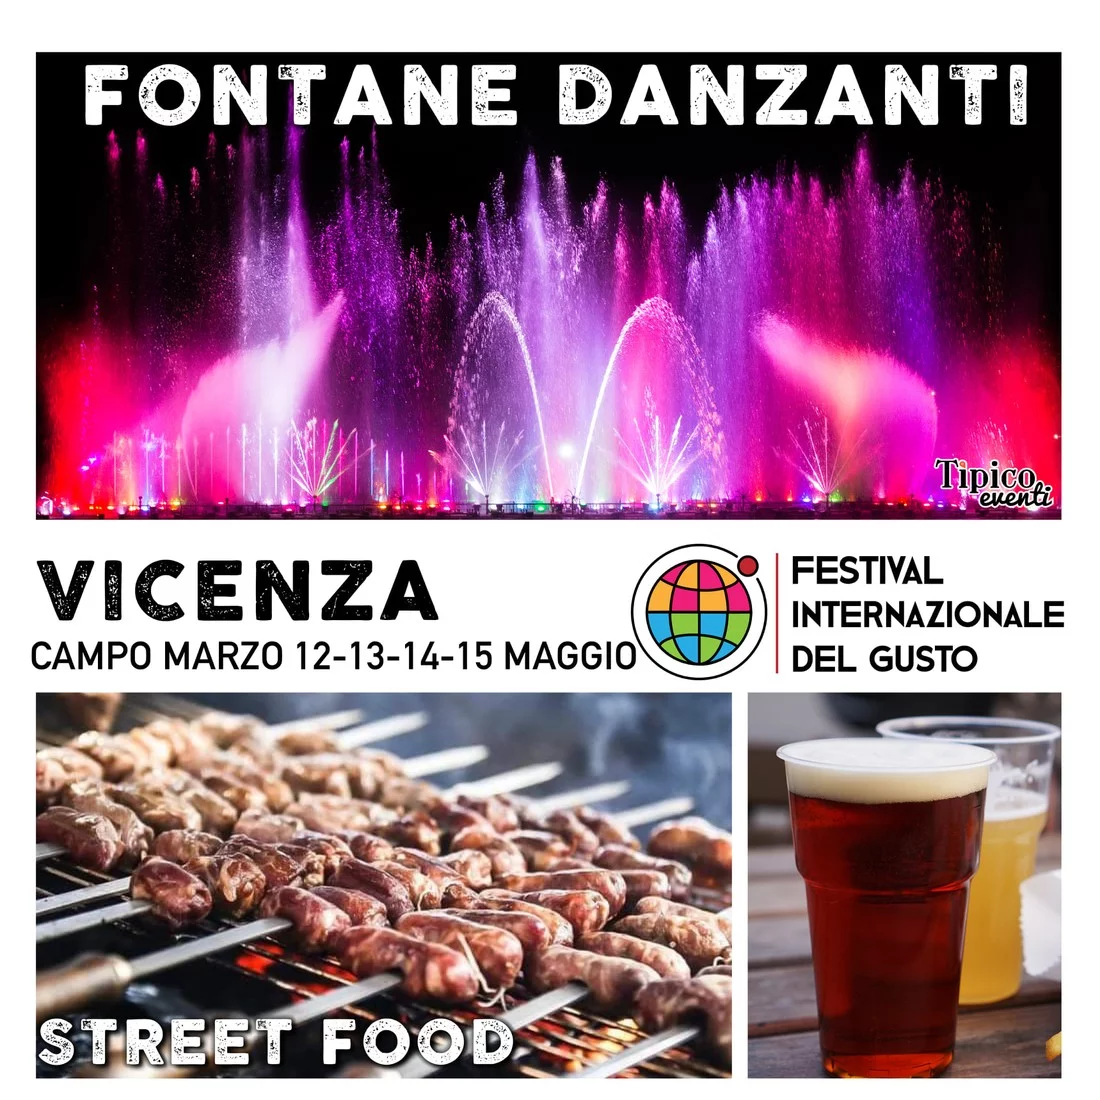 Festival Internazionale del Gusto e Spettacolo Fontane Danzanti